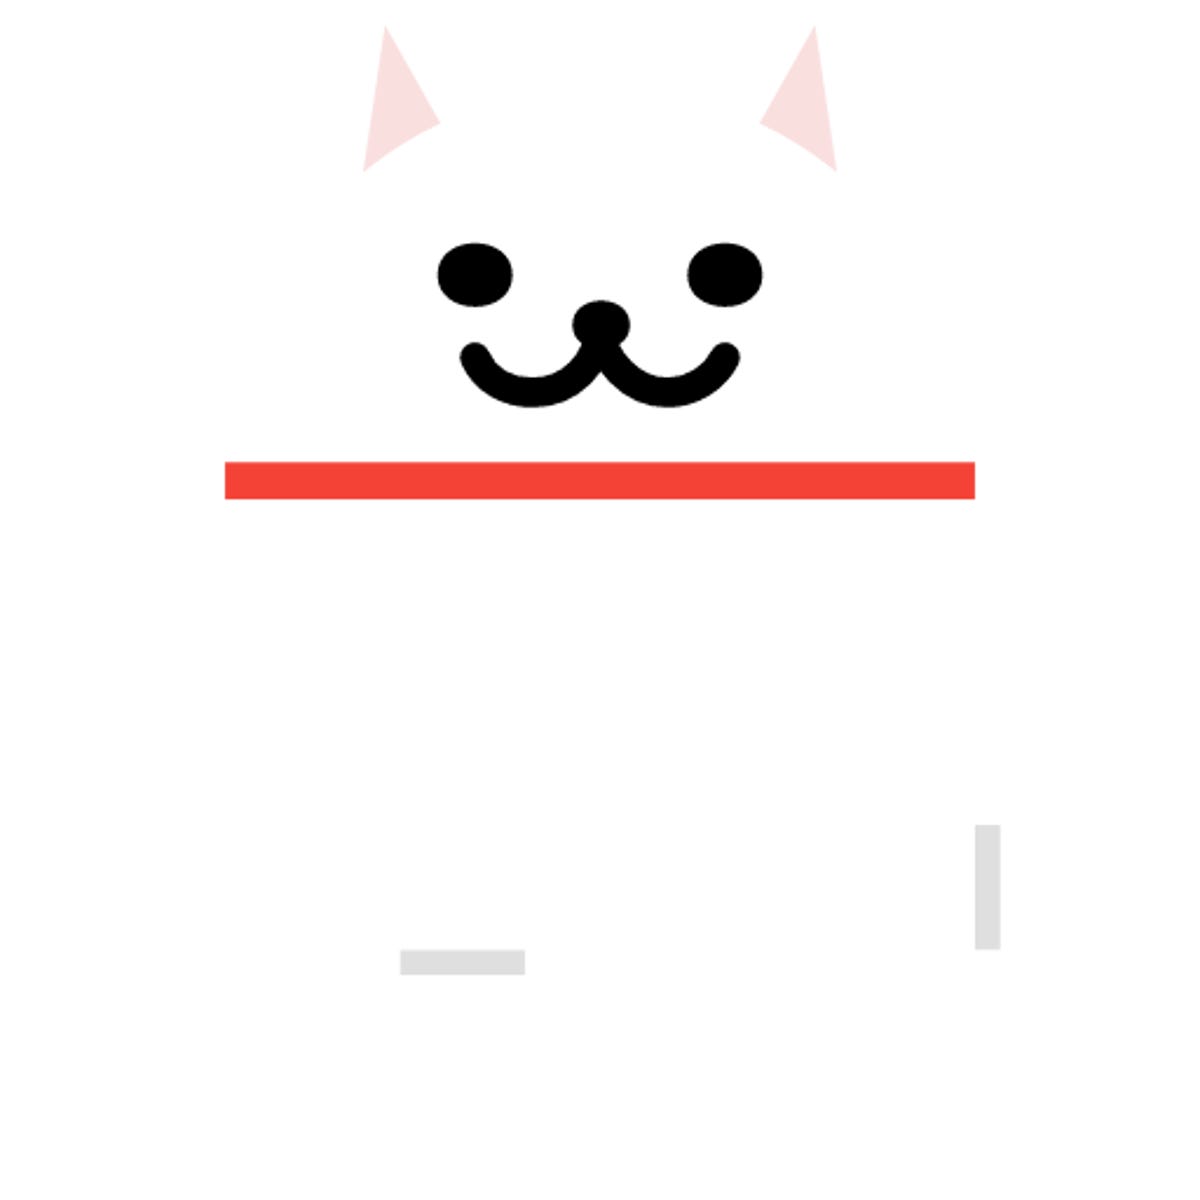 Android Neko! Nougat terá mini game com coleção de gatos; veja